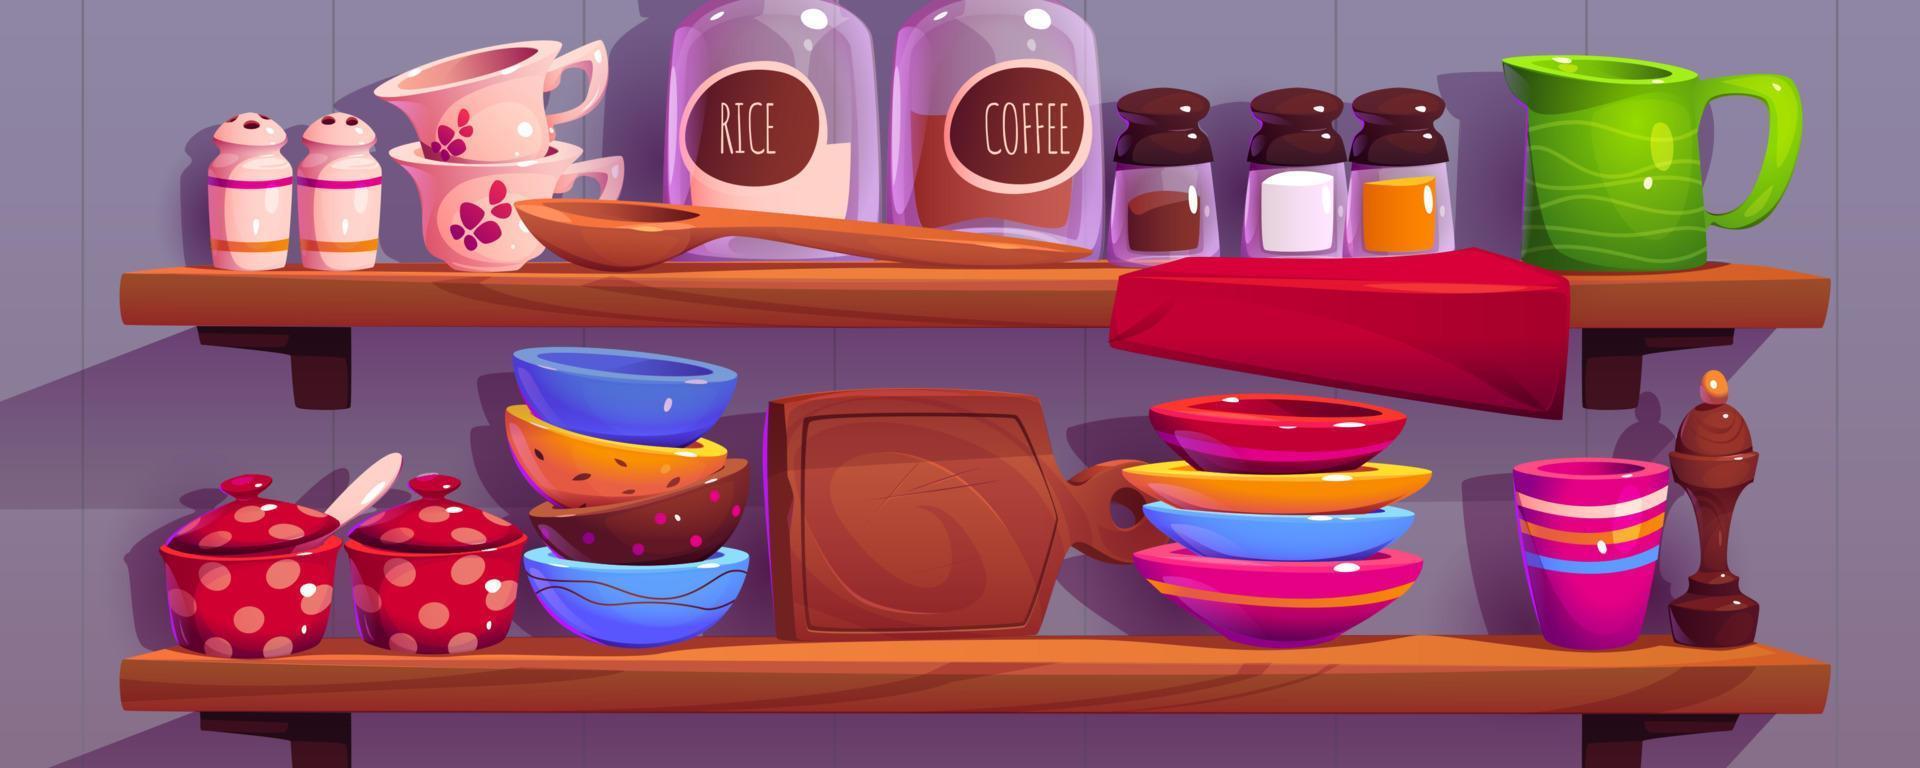 estantes de cocina con ilustración de utensilios de cocina vector